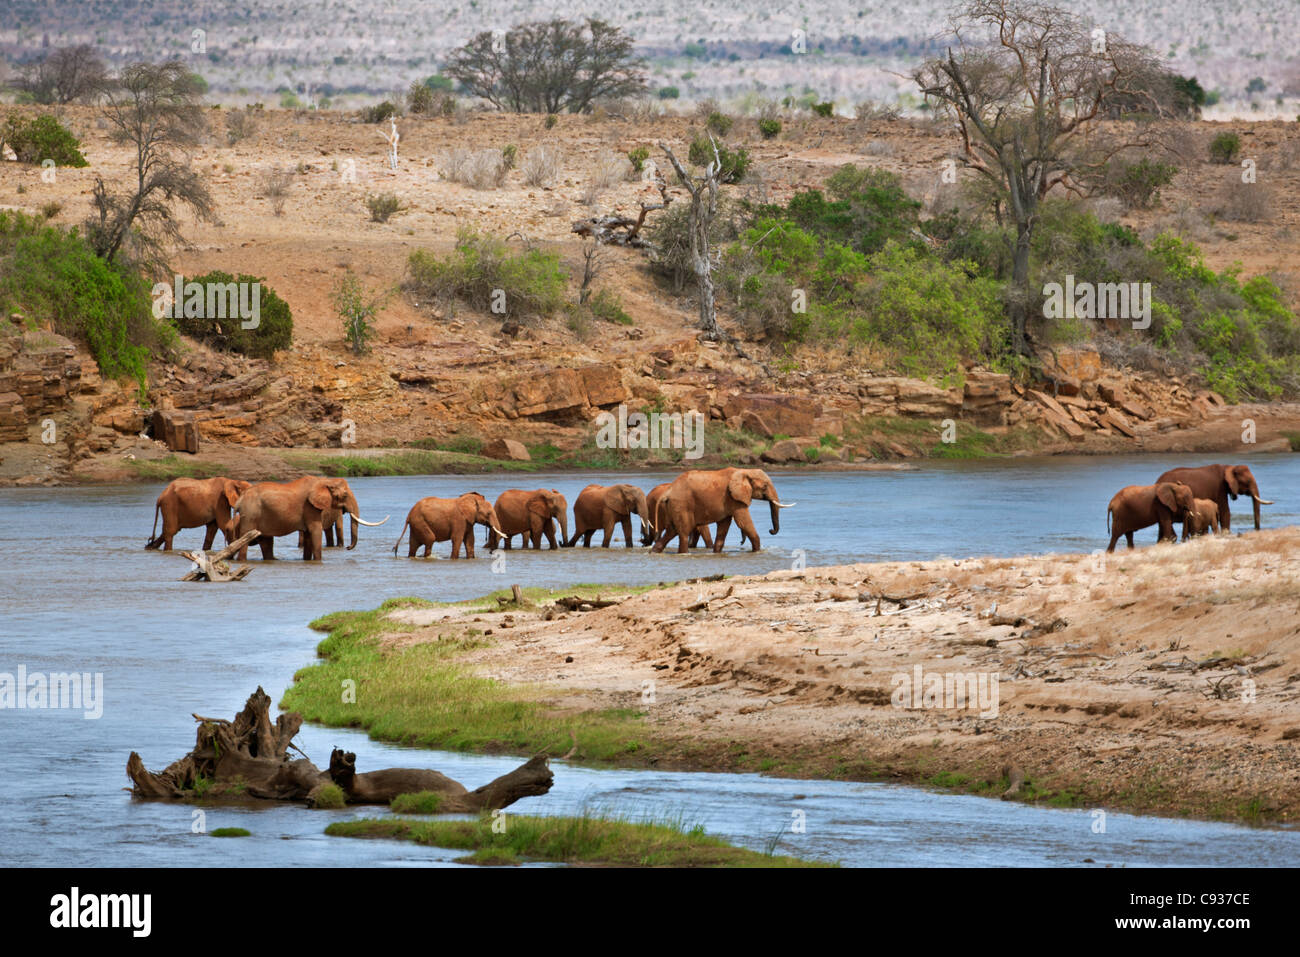 Una manada de elefantes cruza el río Galana en el Parque Nacional de Tsavo East. Foto de stock